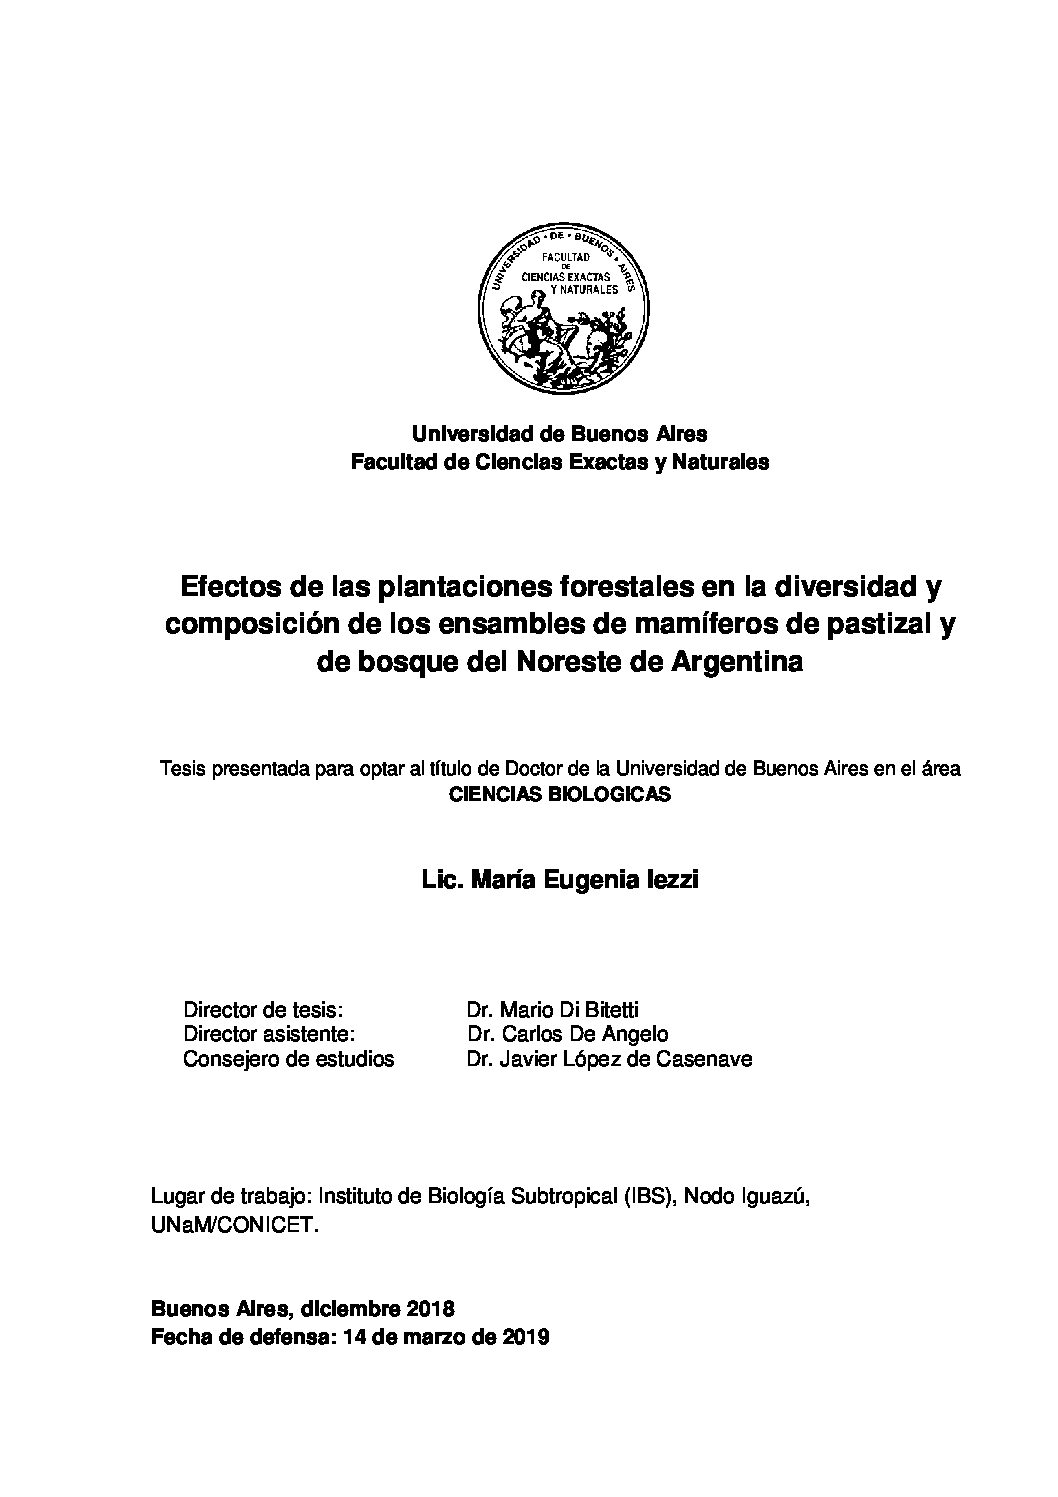 Efectos de las plantaciones forestales en la diversidad y composición de los ensambles de mamíferos de pastizal y de bosque del noreste de Argentina. Tesis-doctoral-Iezzi-2019-pdf